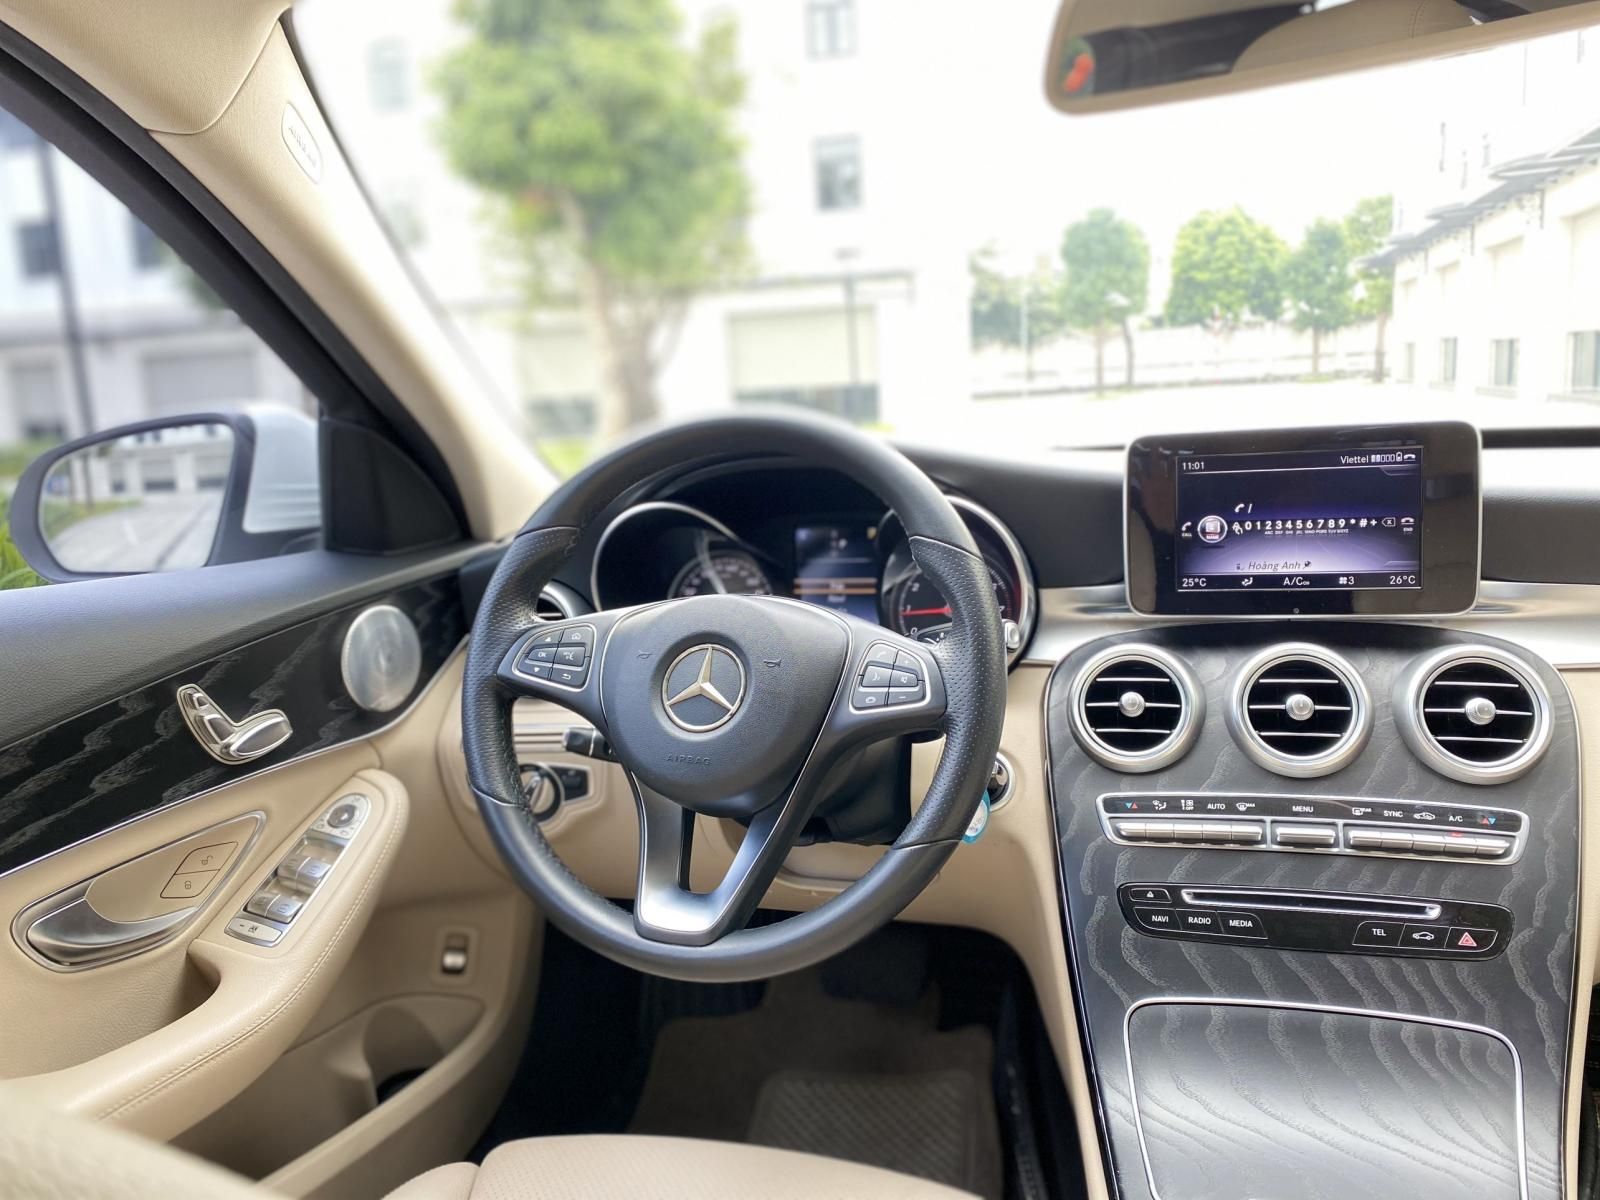 Mercedes-Benz 2018 - Ngoại thất trắng - Đầy đủ trang bị